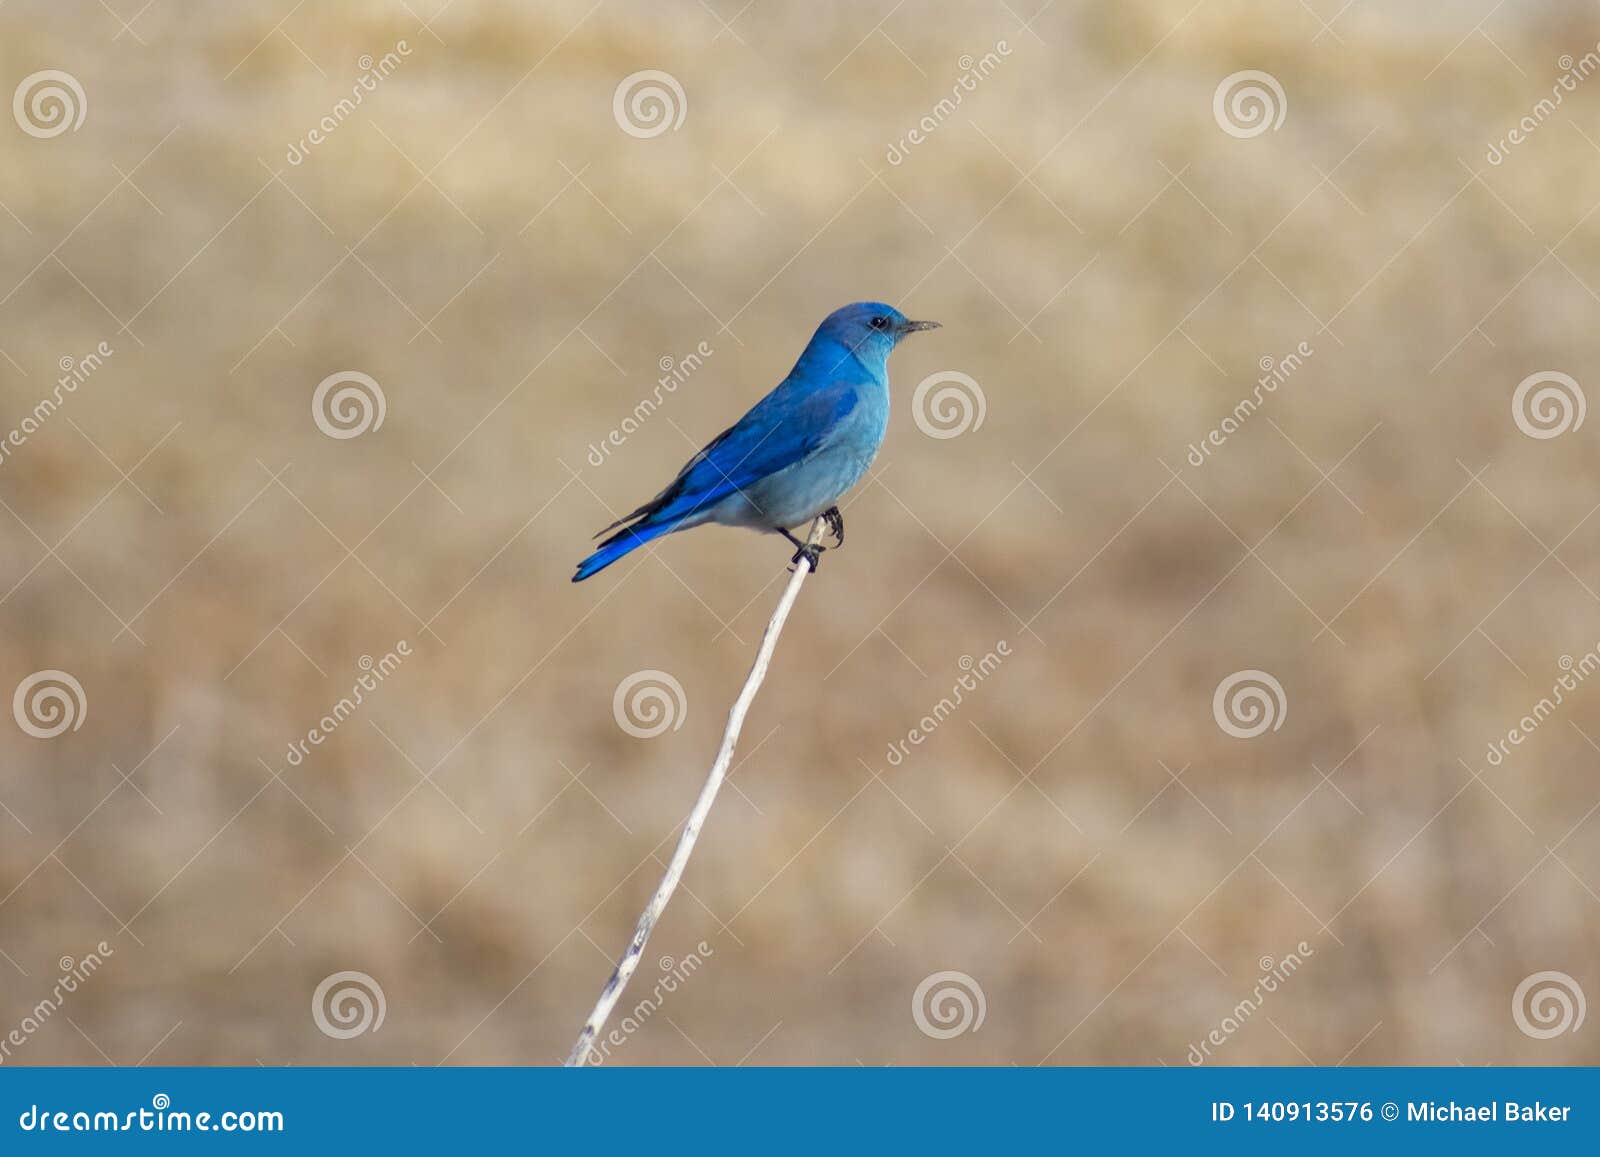 single mountain bluebird on a branch